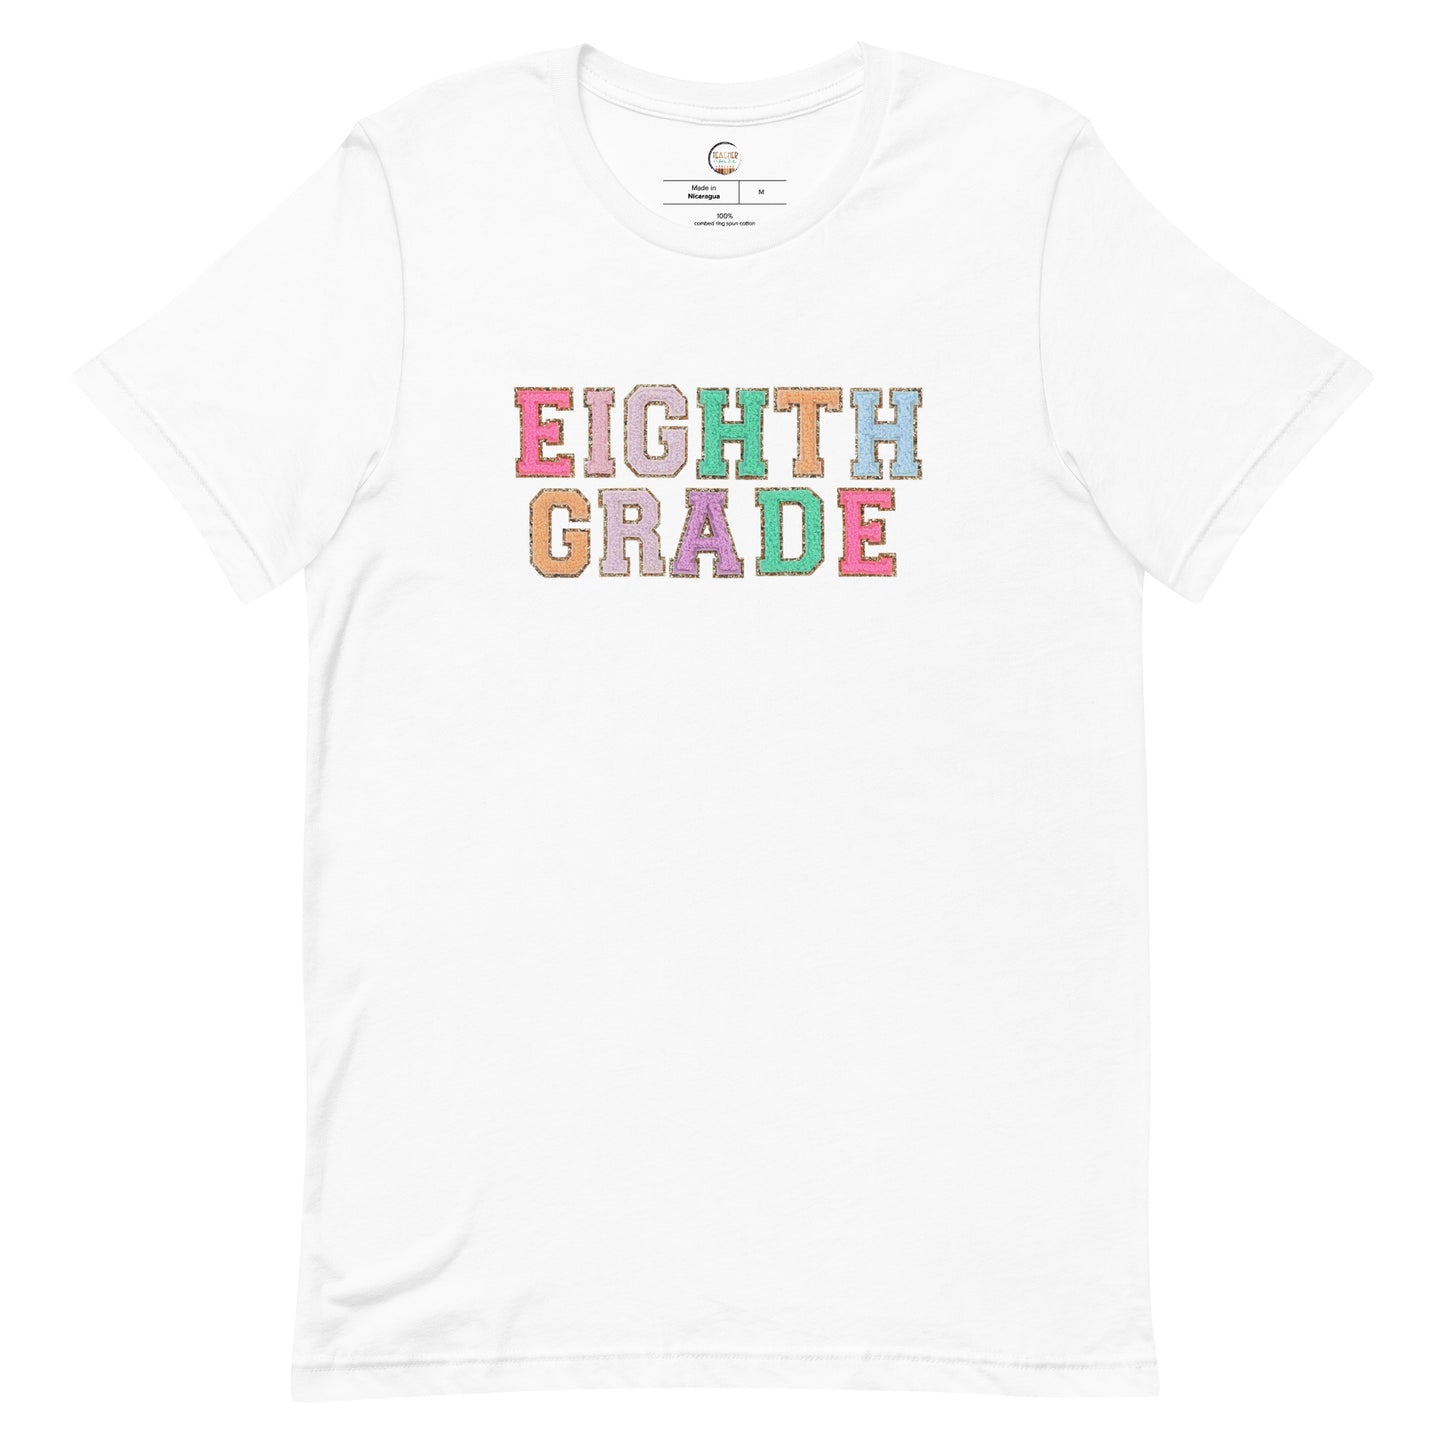 Eighth Grade Teacher Shirt